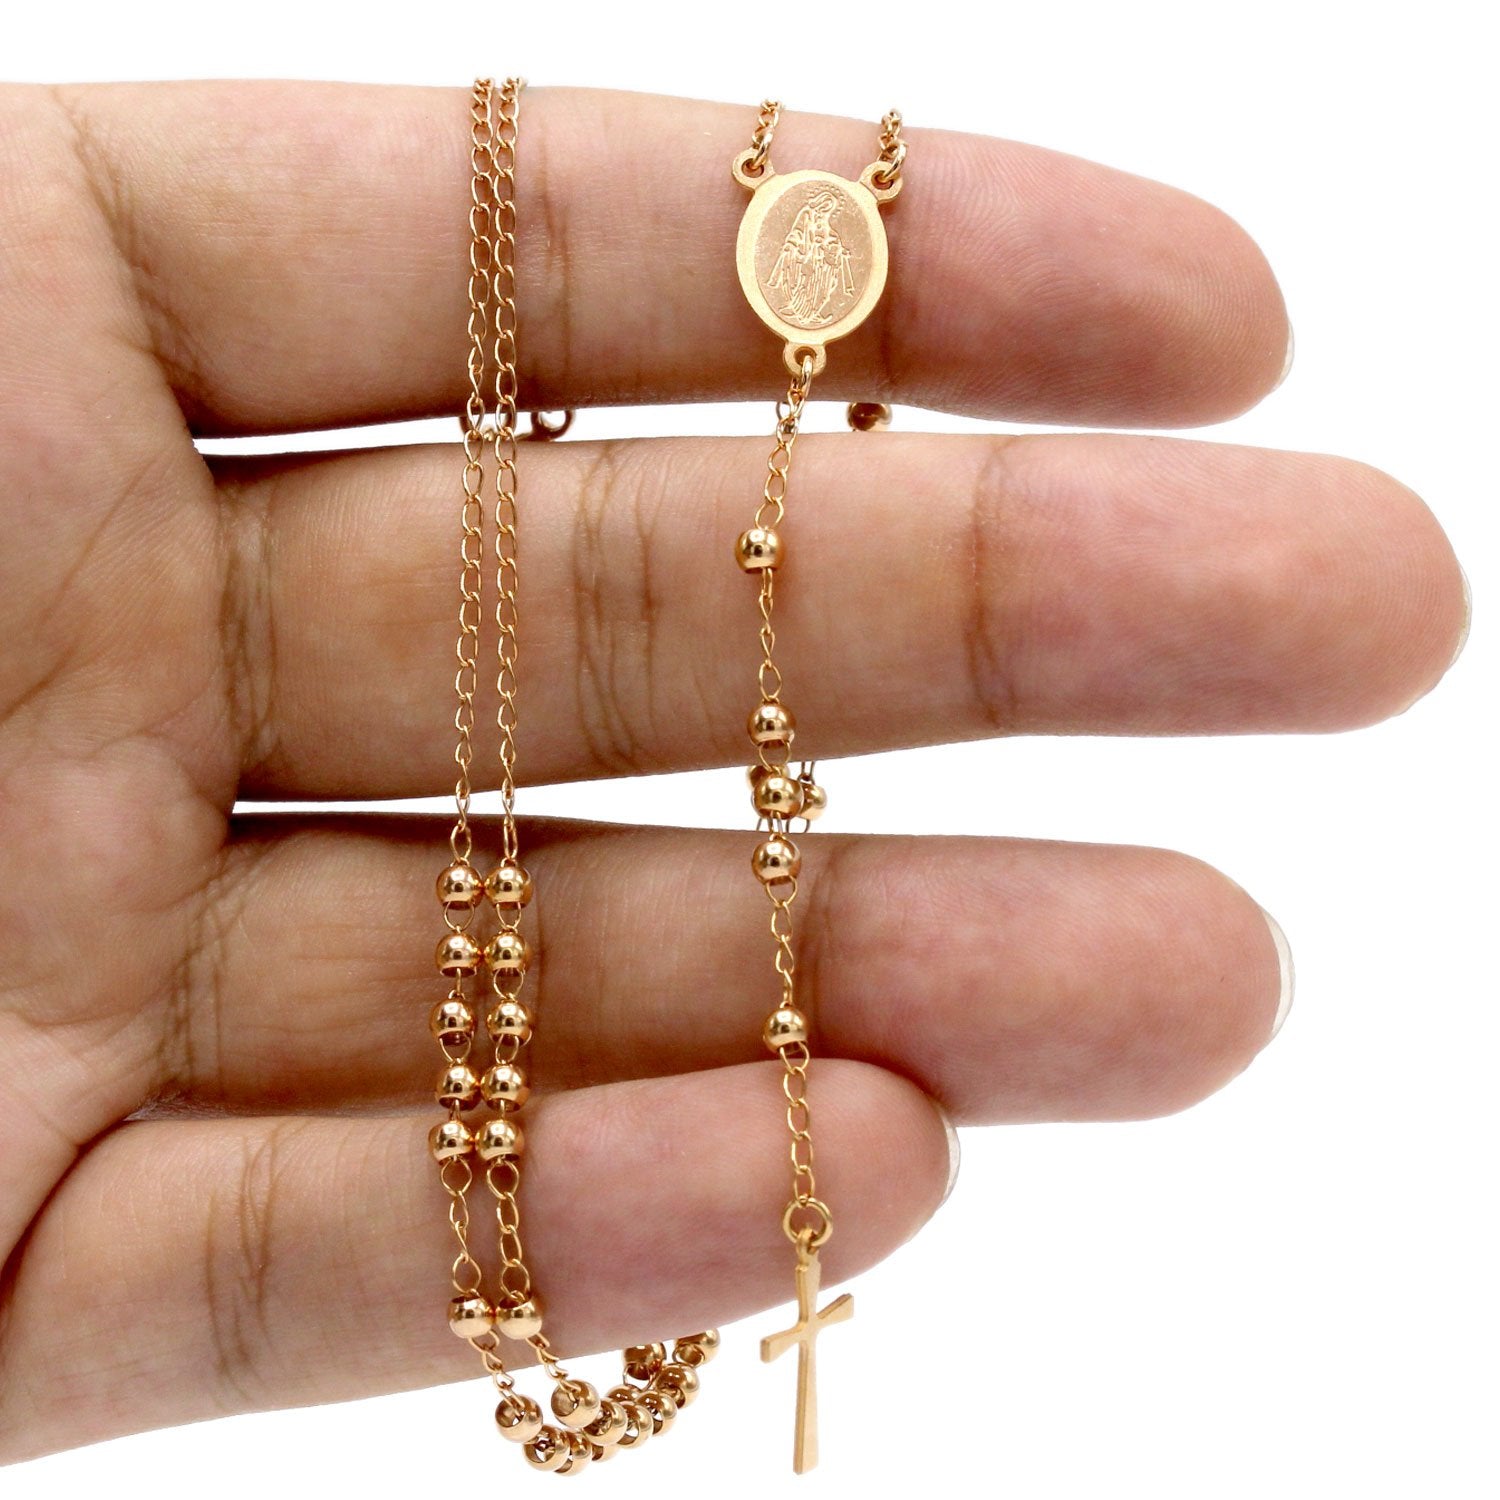 Cross Pendant Bead Necklace Jewelry 